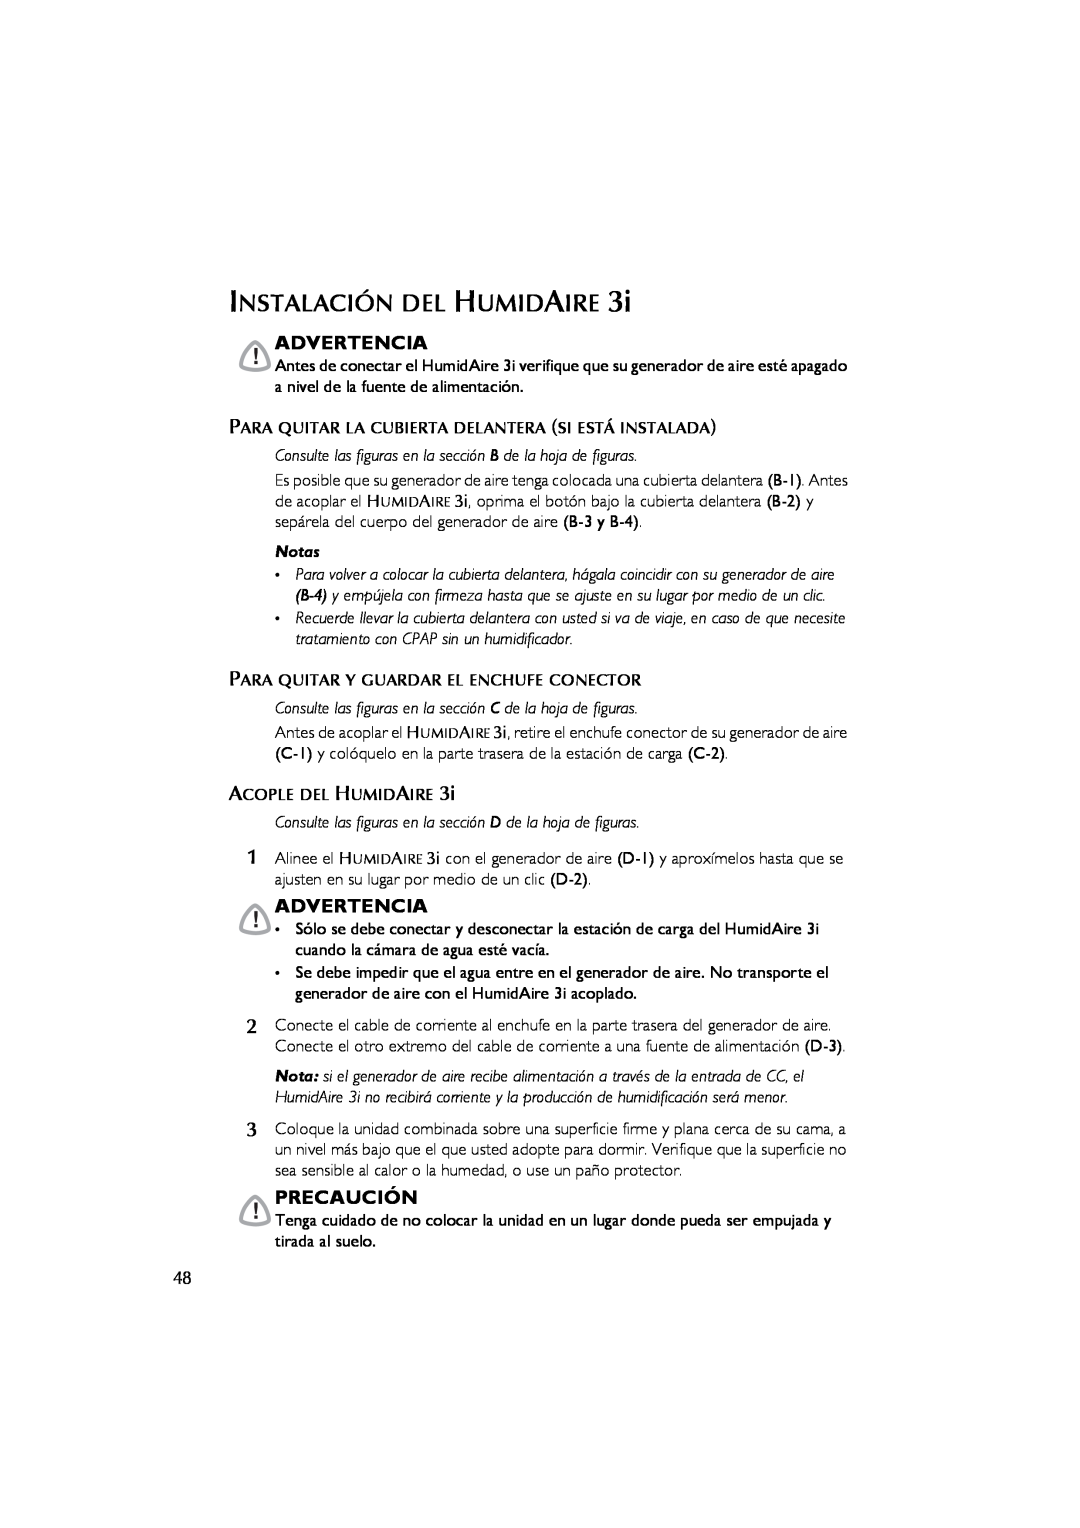 ResMed 3I user manual Instalación Del Humidaire, Advertencia, Precaución, Notas 